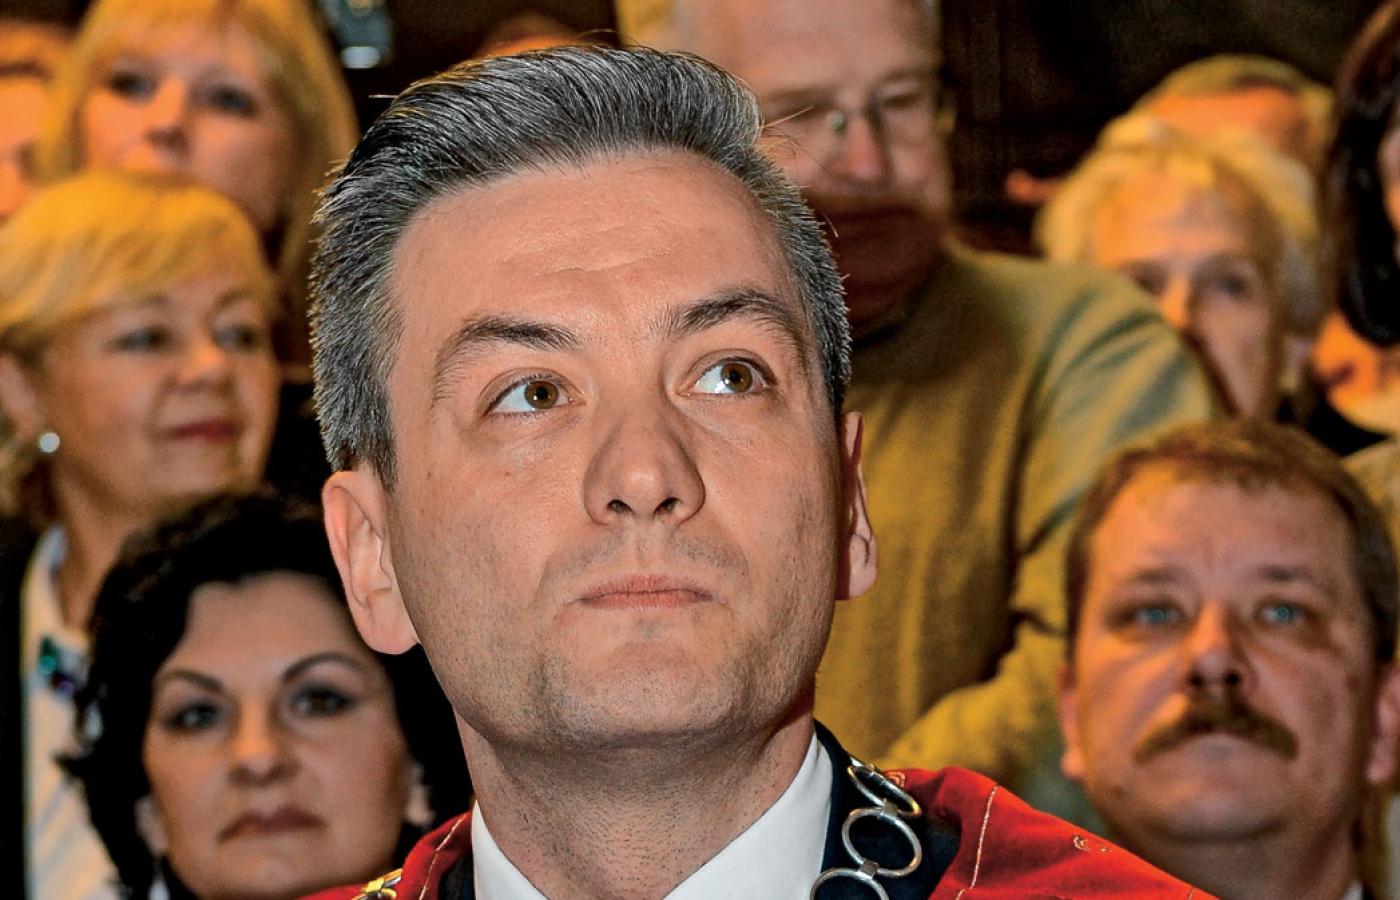 W 2014 r. zdobył fotel prezydenta Słupska. Nie jest więc debiutantem, choć może najważniejsza rola dopiero przed nim.